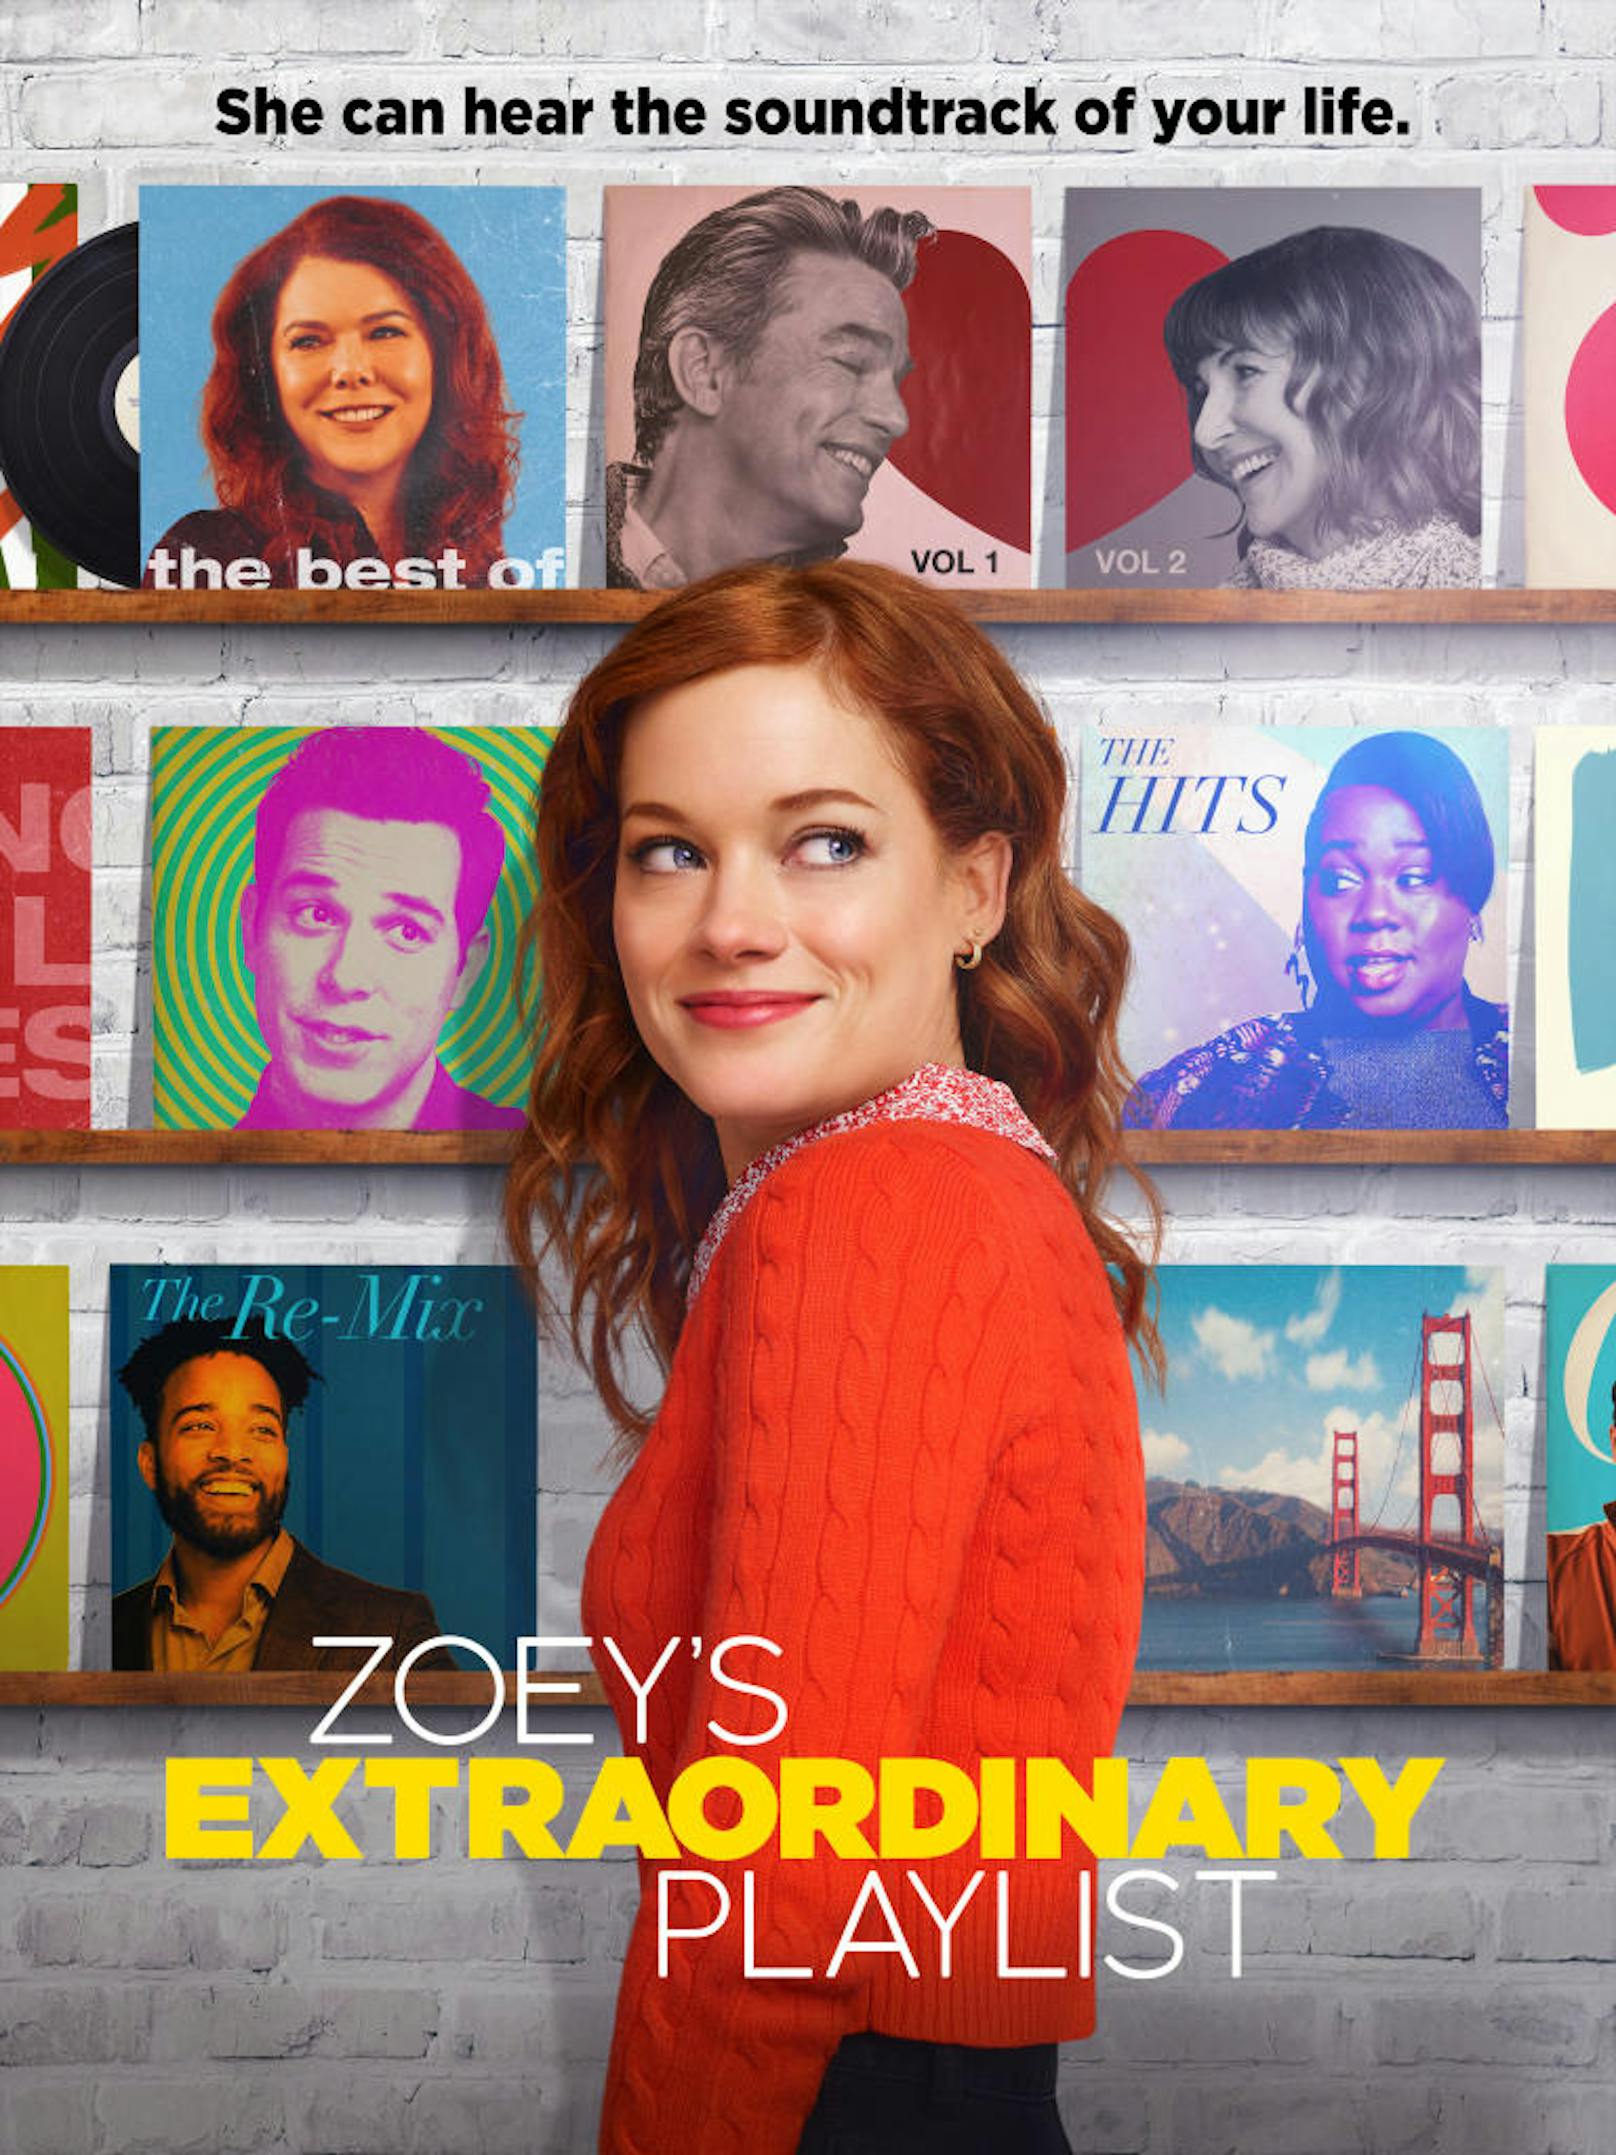 <strong>"Zoey's Extraordinary Playlist" auf Sky</strong>: Nach einem MRT-Scan hört Zoey Clarke plötzlich die Wünsche und Gedanken ihrer Umgebung als Songs. 